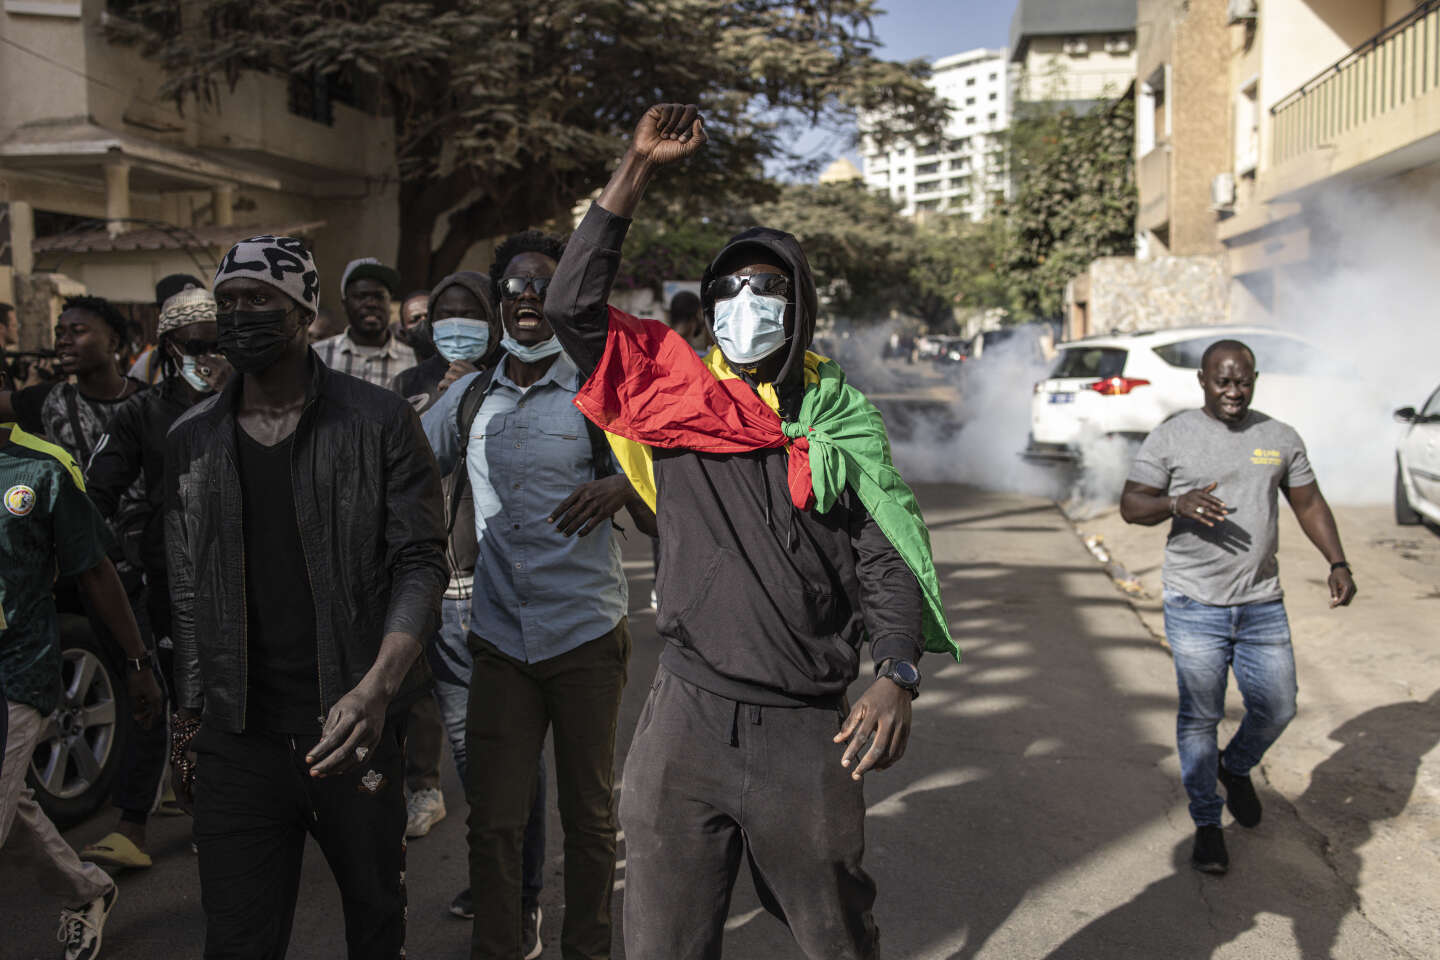 Report des élections au Sénégal : « On touche au cœur de notre modèle démocratique »